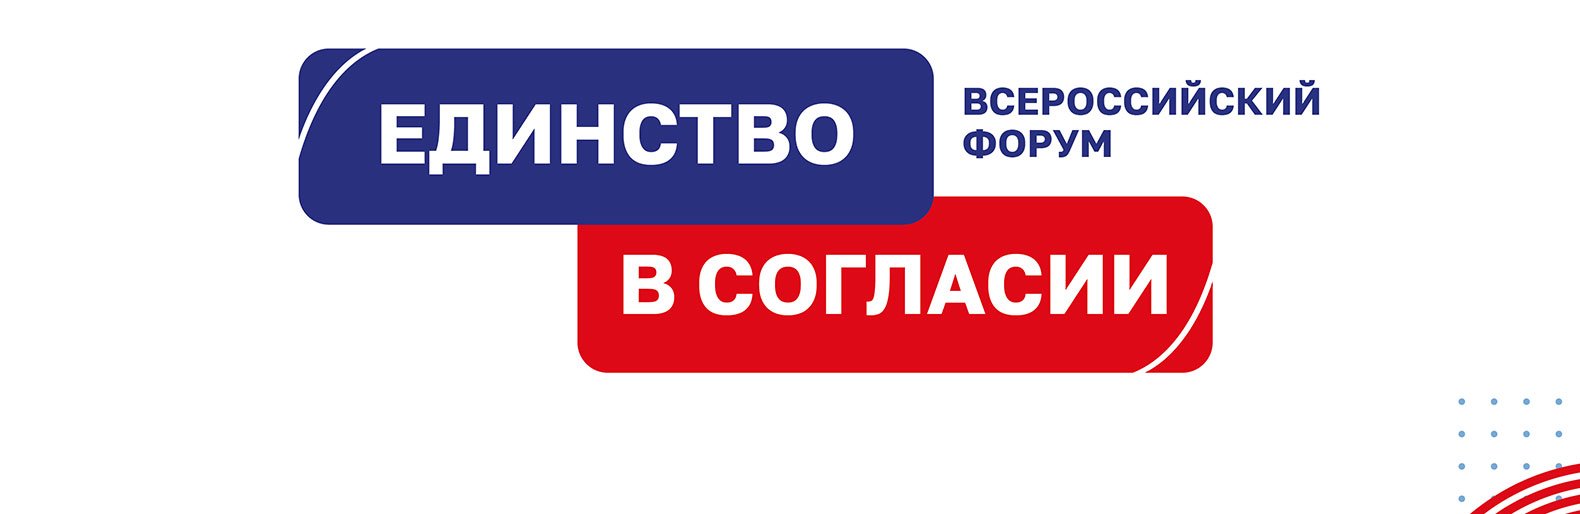 Делегация Белгородской области участвует во Всероссийском форуме «Единство в согласии» 